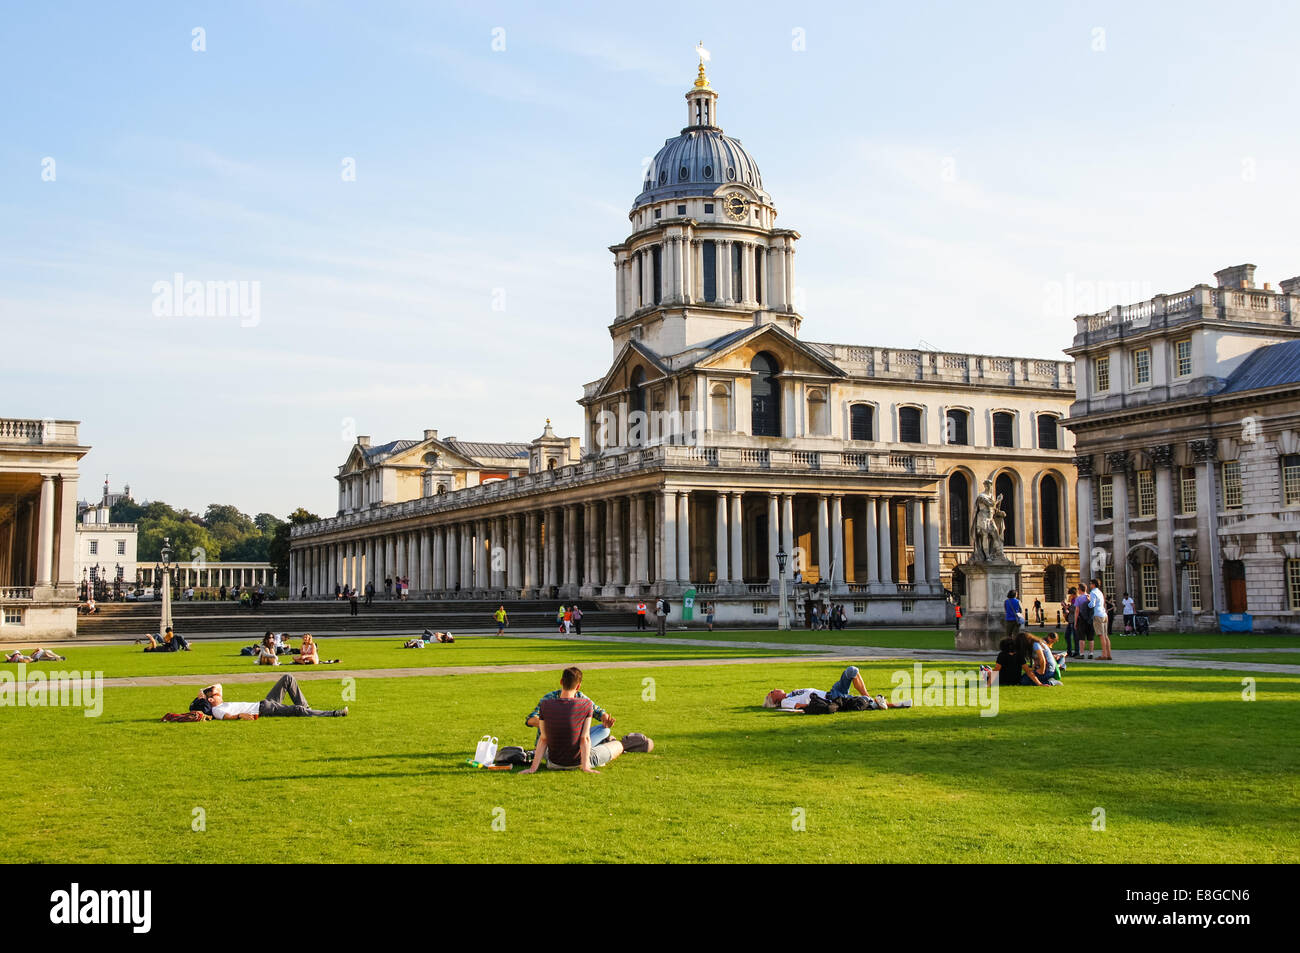 Université de Greenwich, Old Royal Naval College, Londres Angleterre Royaume-Uni UK Banque D'Images